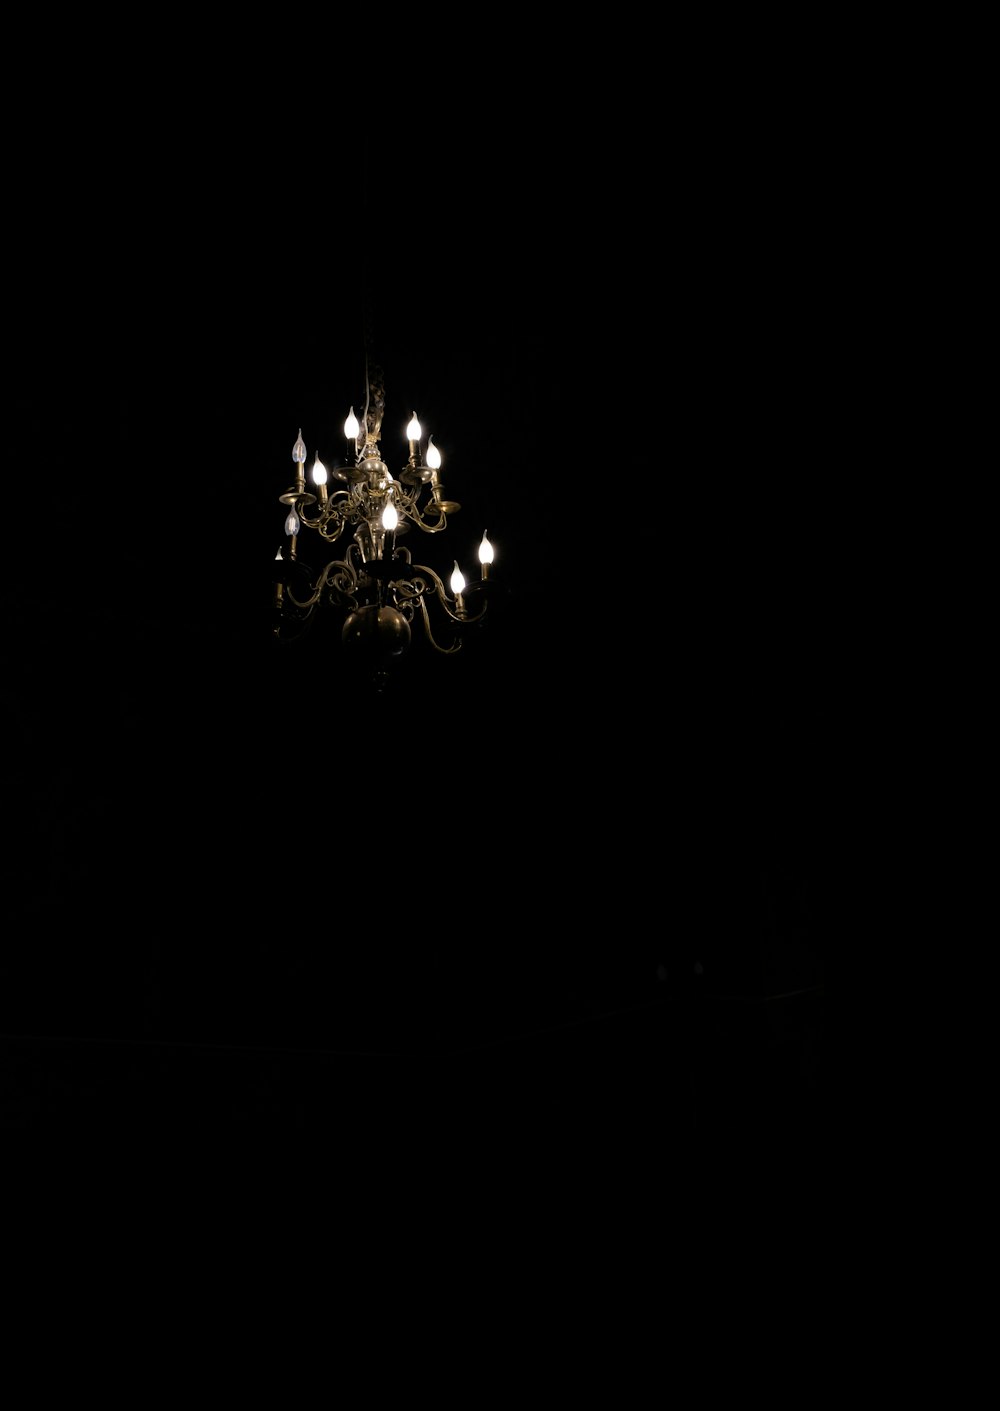 Un candelabro que cuelga del techo en una habitación oscura